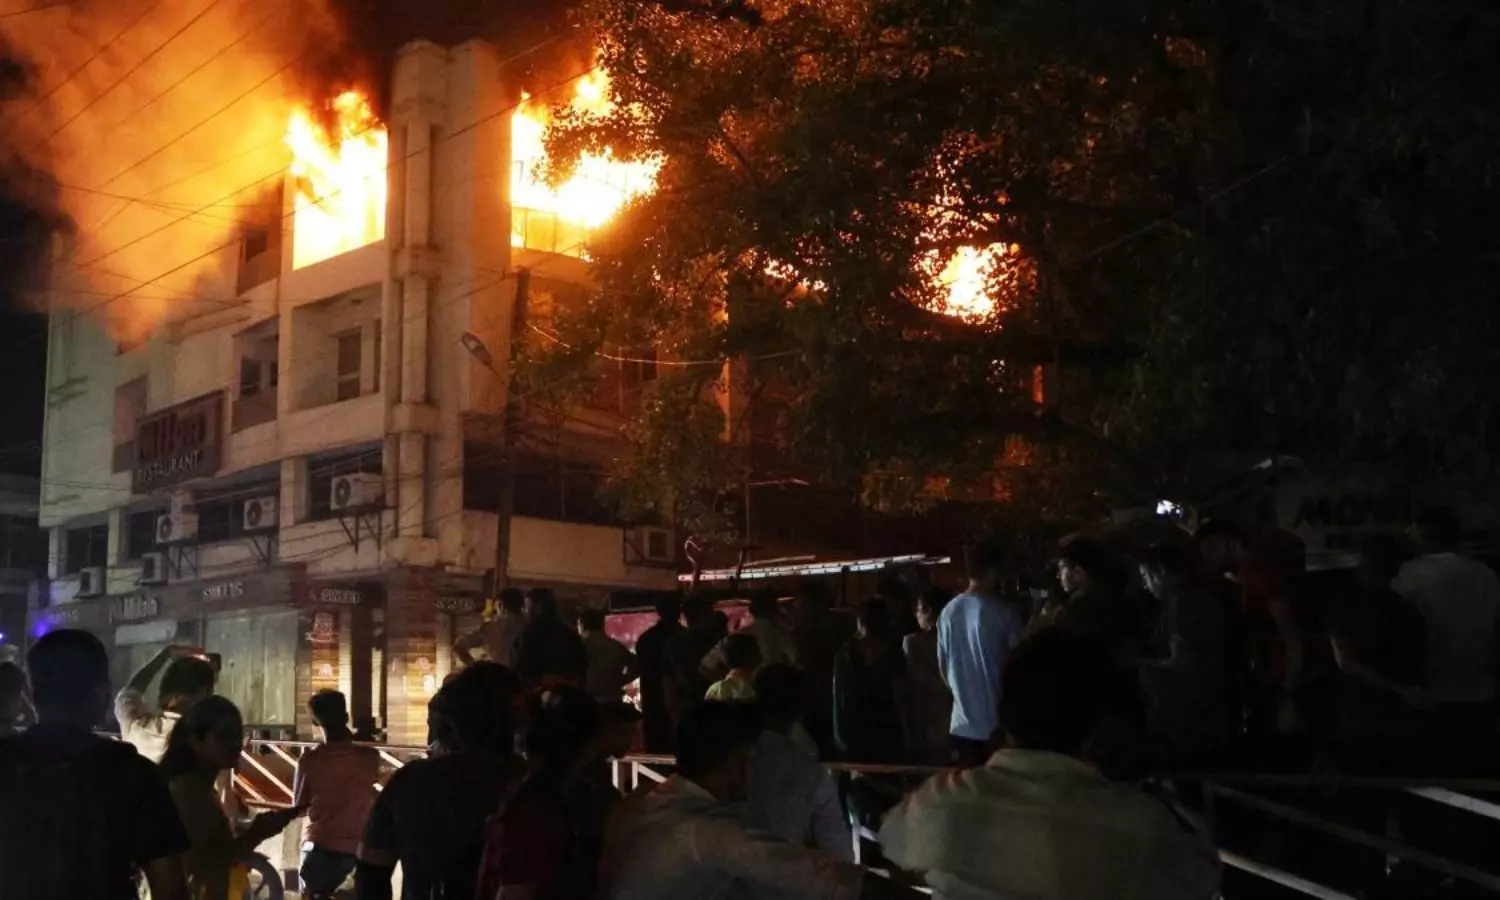 Bhopal News: भोपाल के मिलन रेस्टोरेंट लगी भीषण आग, आस पास बना अफरा तफरी का माहौल, ढाई घंटे बाद आग पर पाया गया काबू